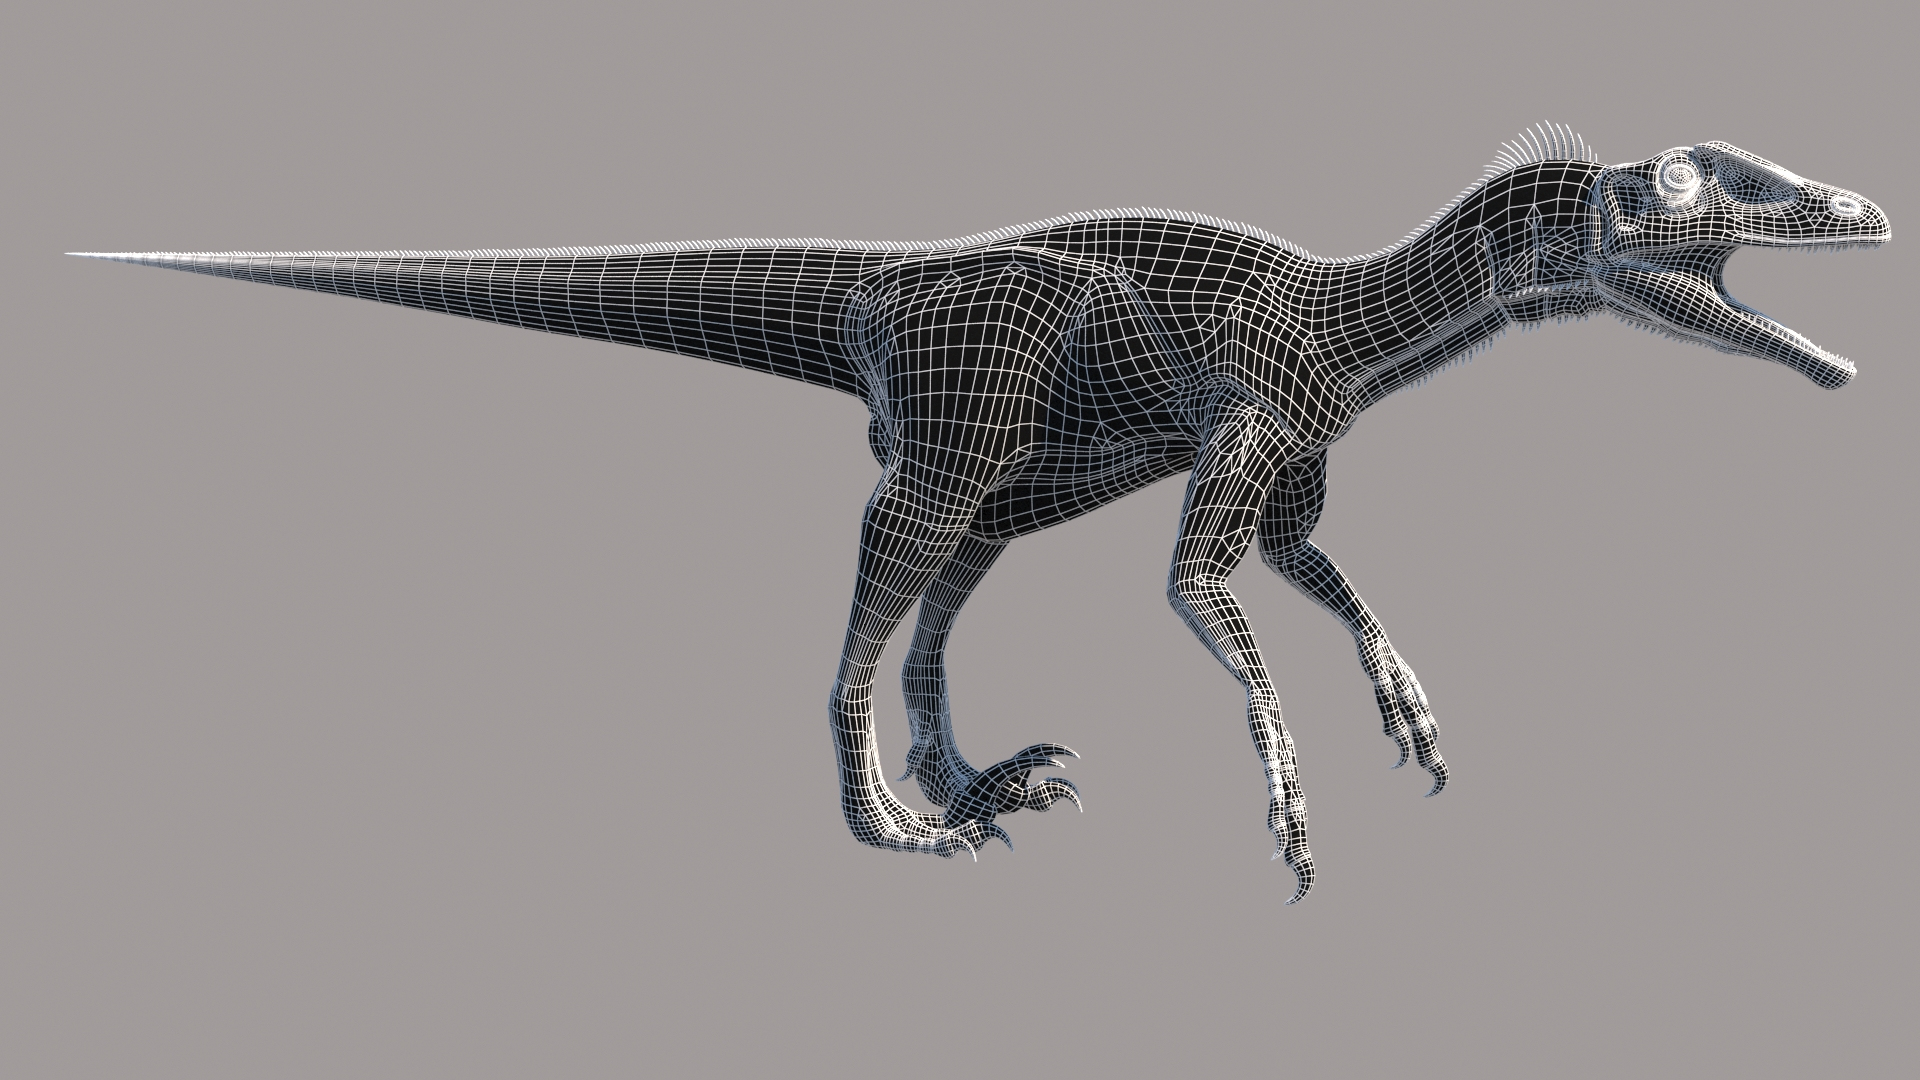 Utahraptor dinosaur 3D model TurboSquid 1697576